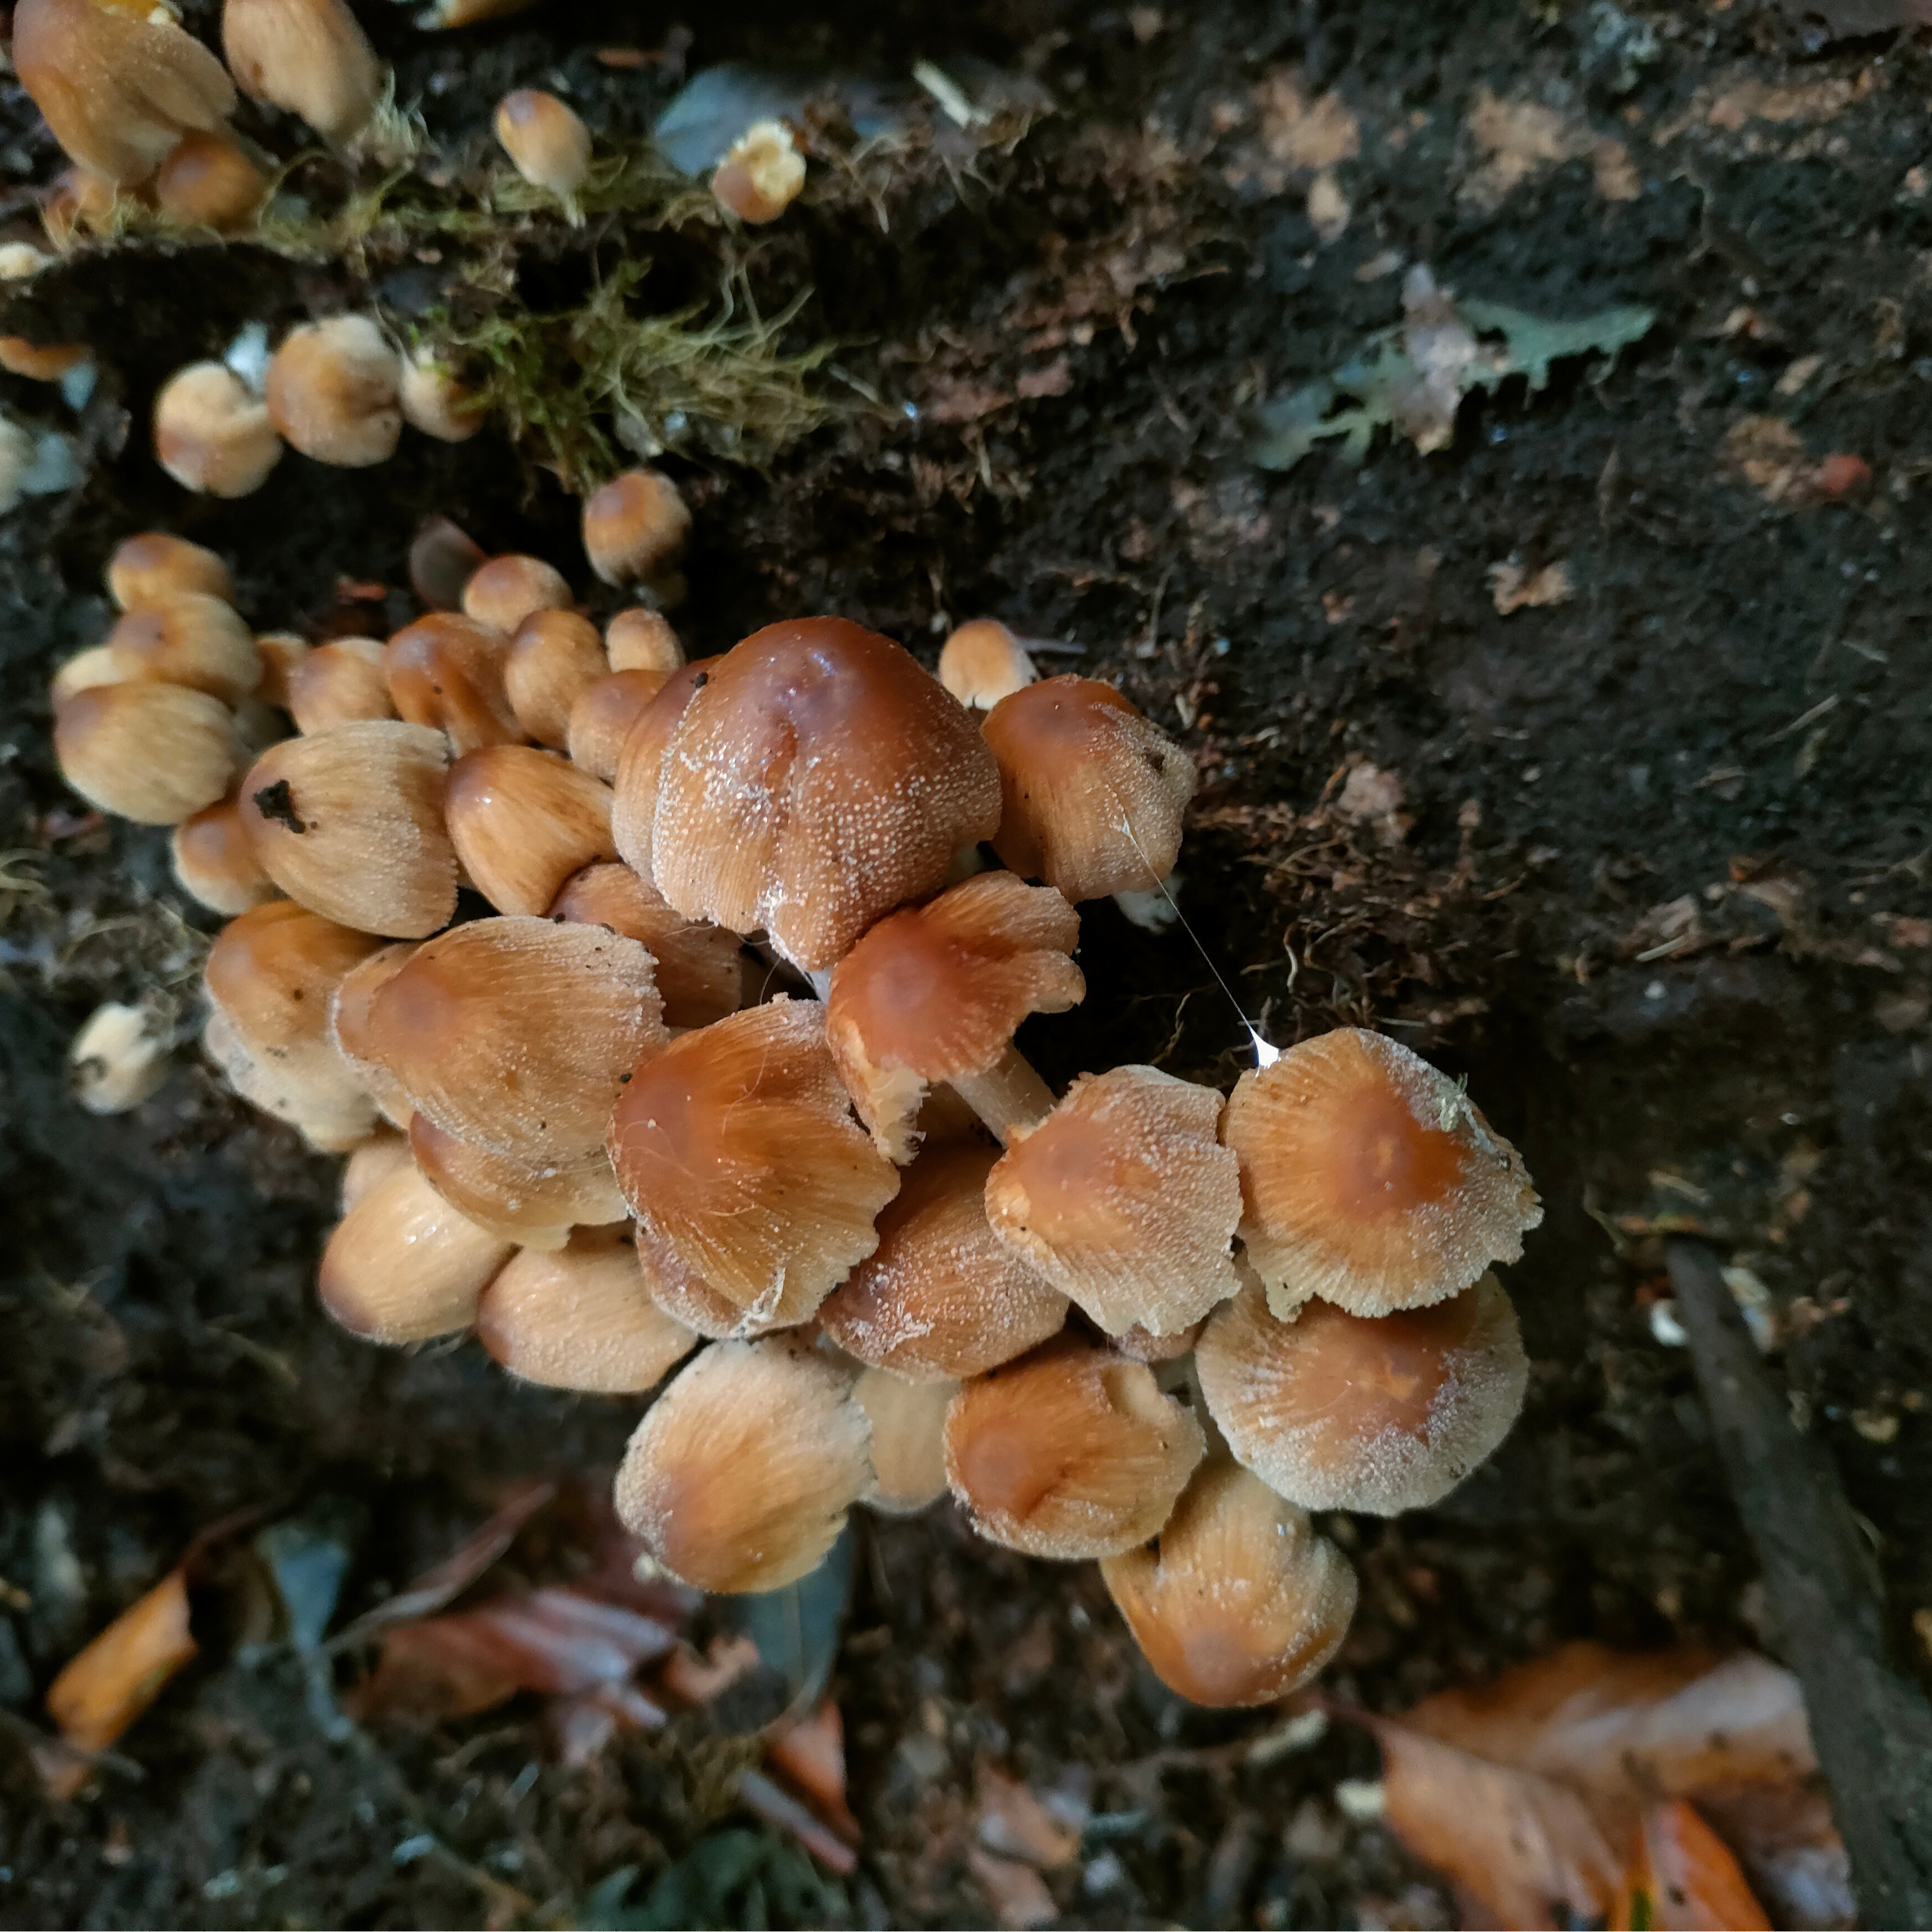 Fungi for Future